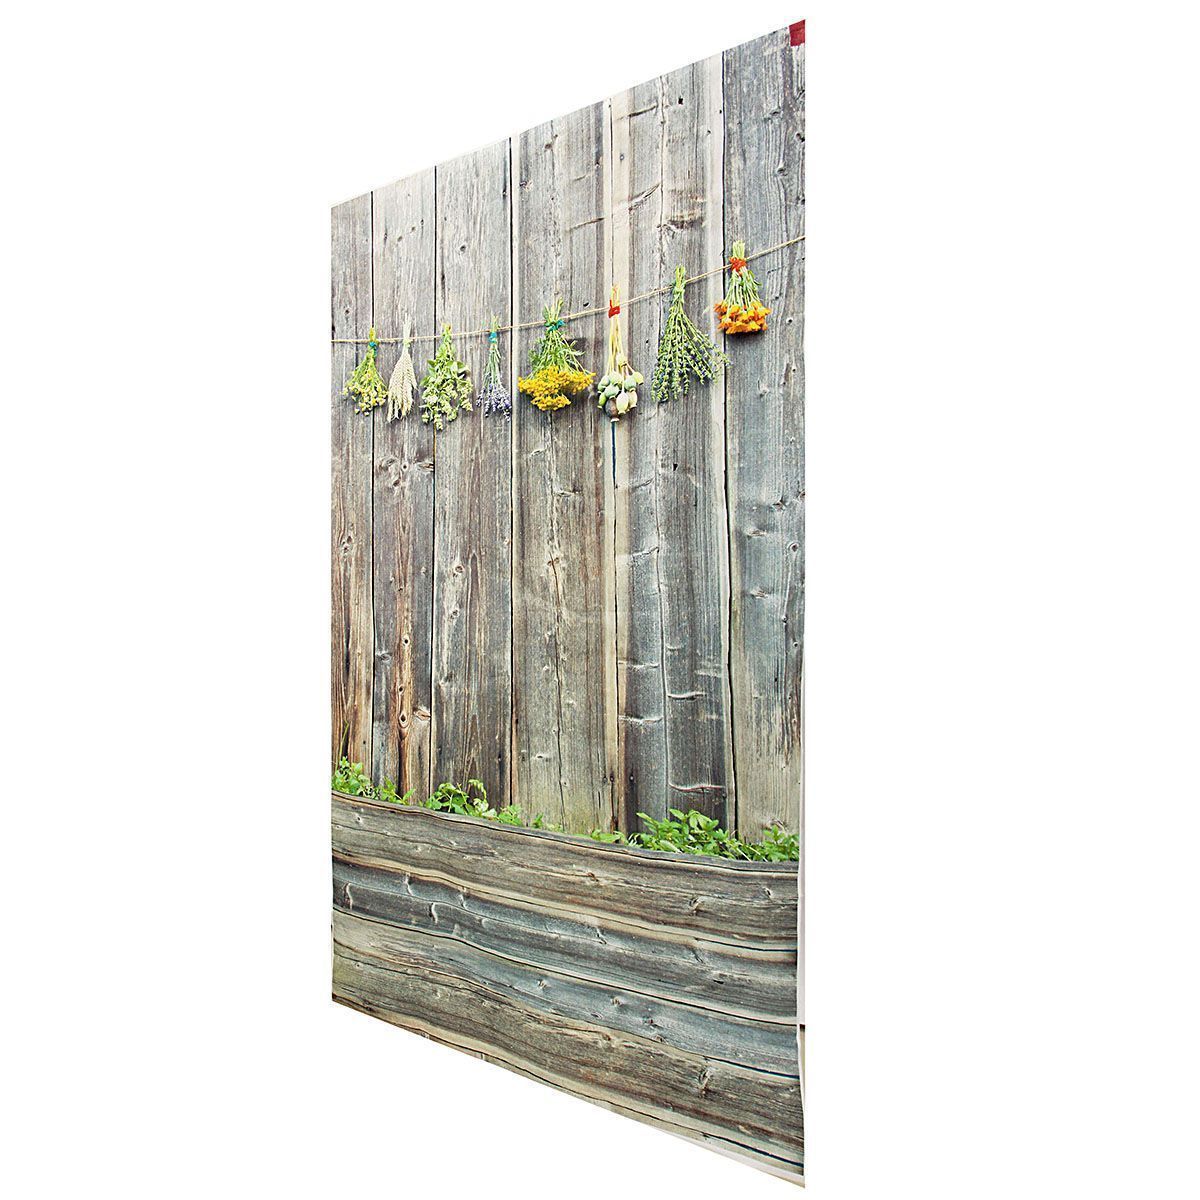 Retro-3x5ft-Vinyl-Backdrop-Photography-Wooden-Wall-Floor-Background-Studio-Props-1142369